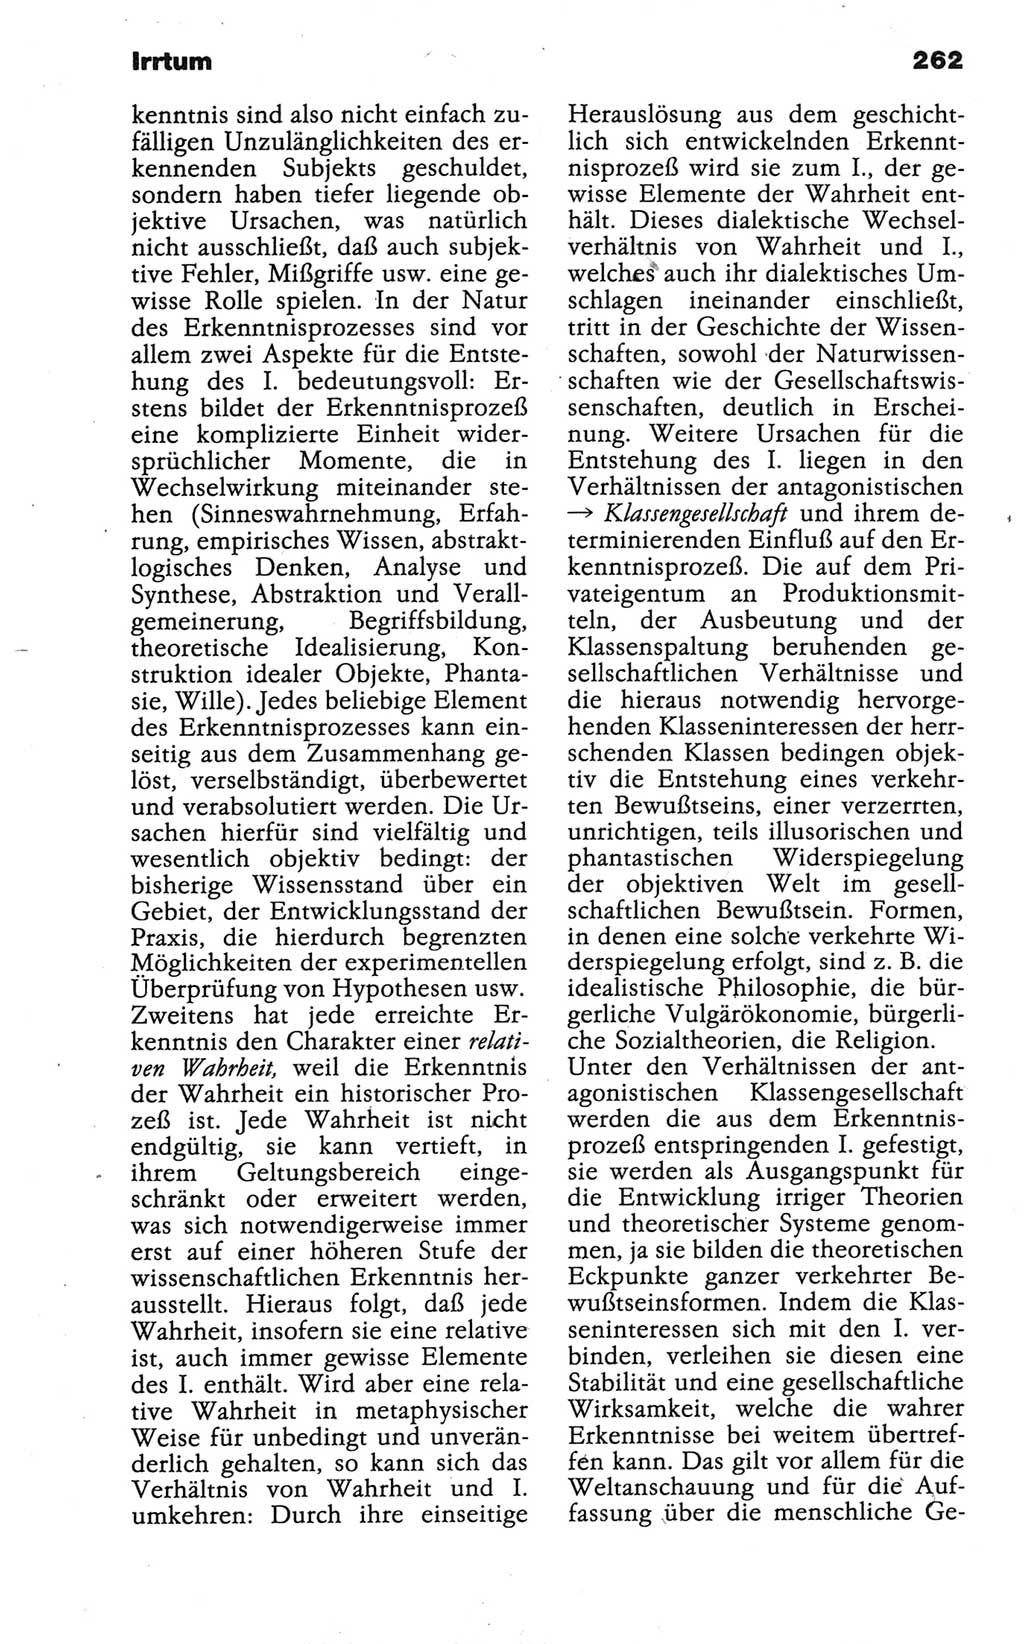 Wörterbuch der marxistisch-leninistischen Philosophie [Deutsche Demokratische Republik (DDR)] 1986, Seite 262 (Wb. ML Phil. DDR 1986, S. 262)